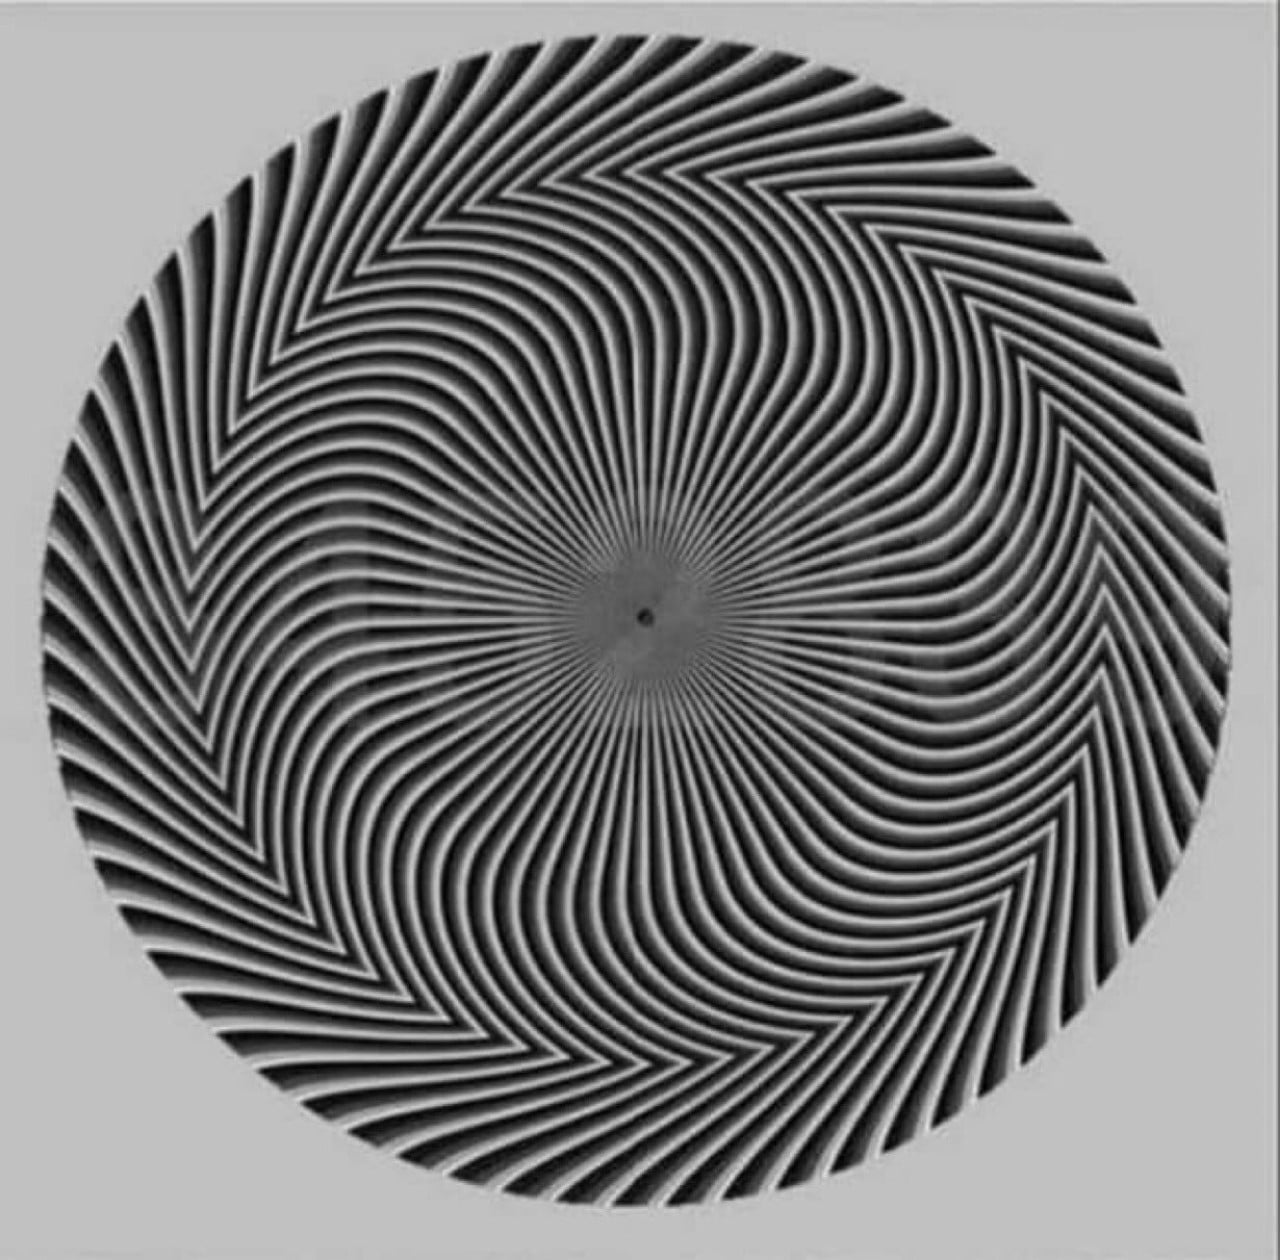 ¿Qué número ves? Ilusión óptica genera polémica en redes